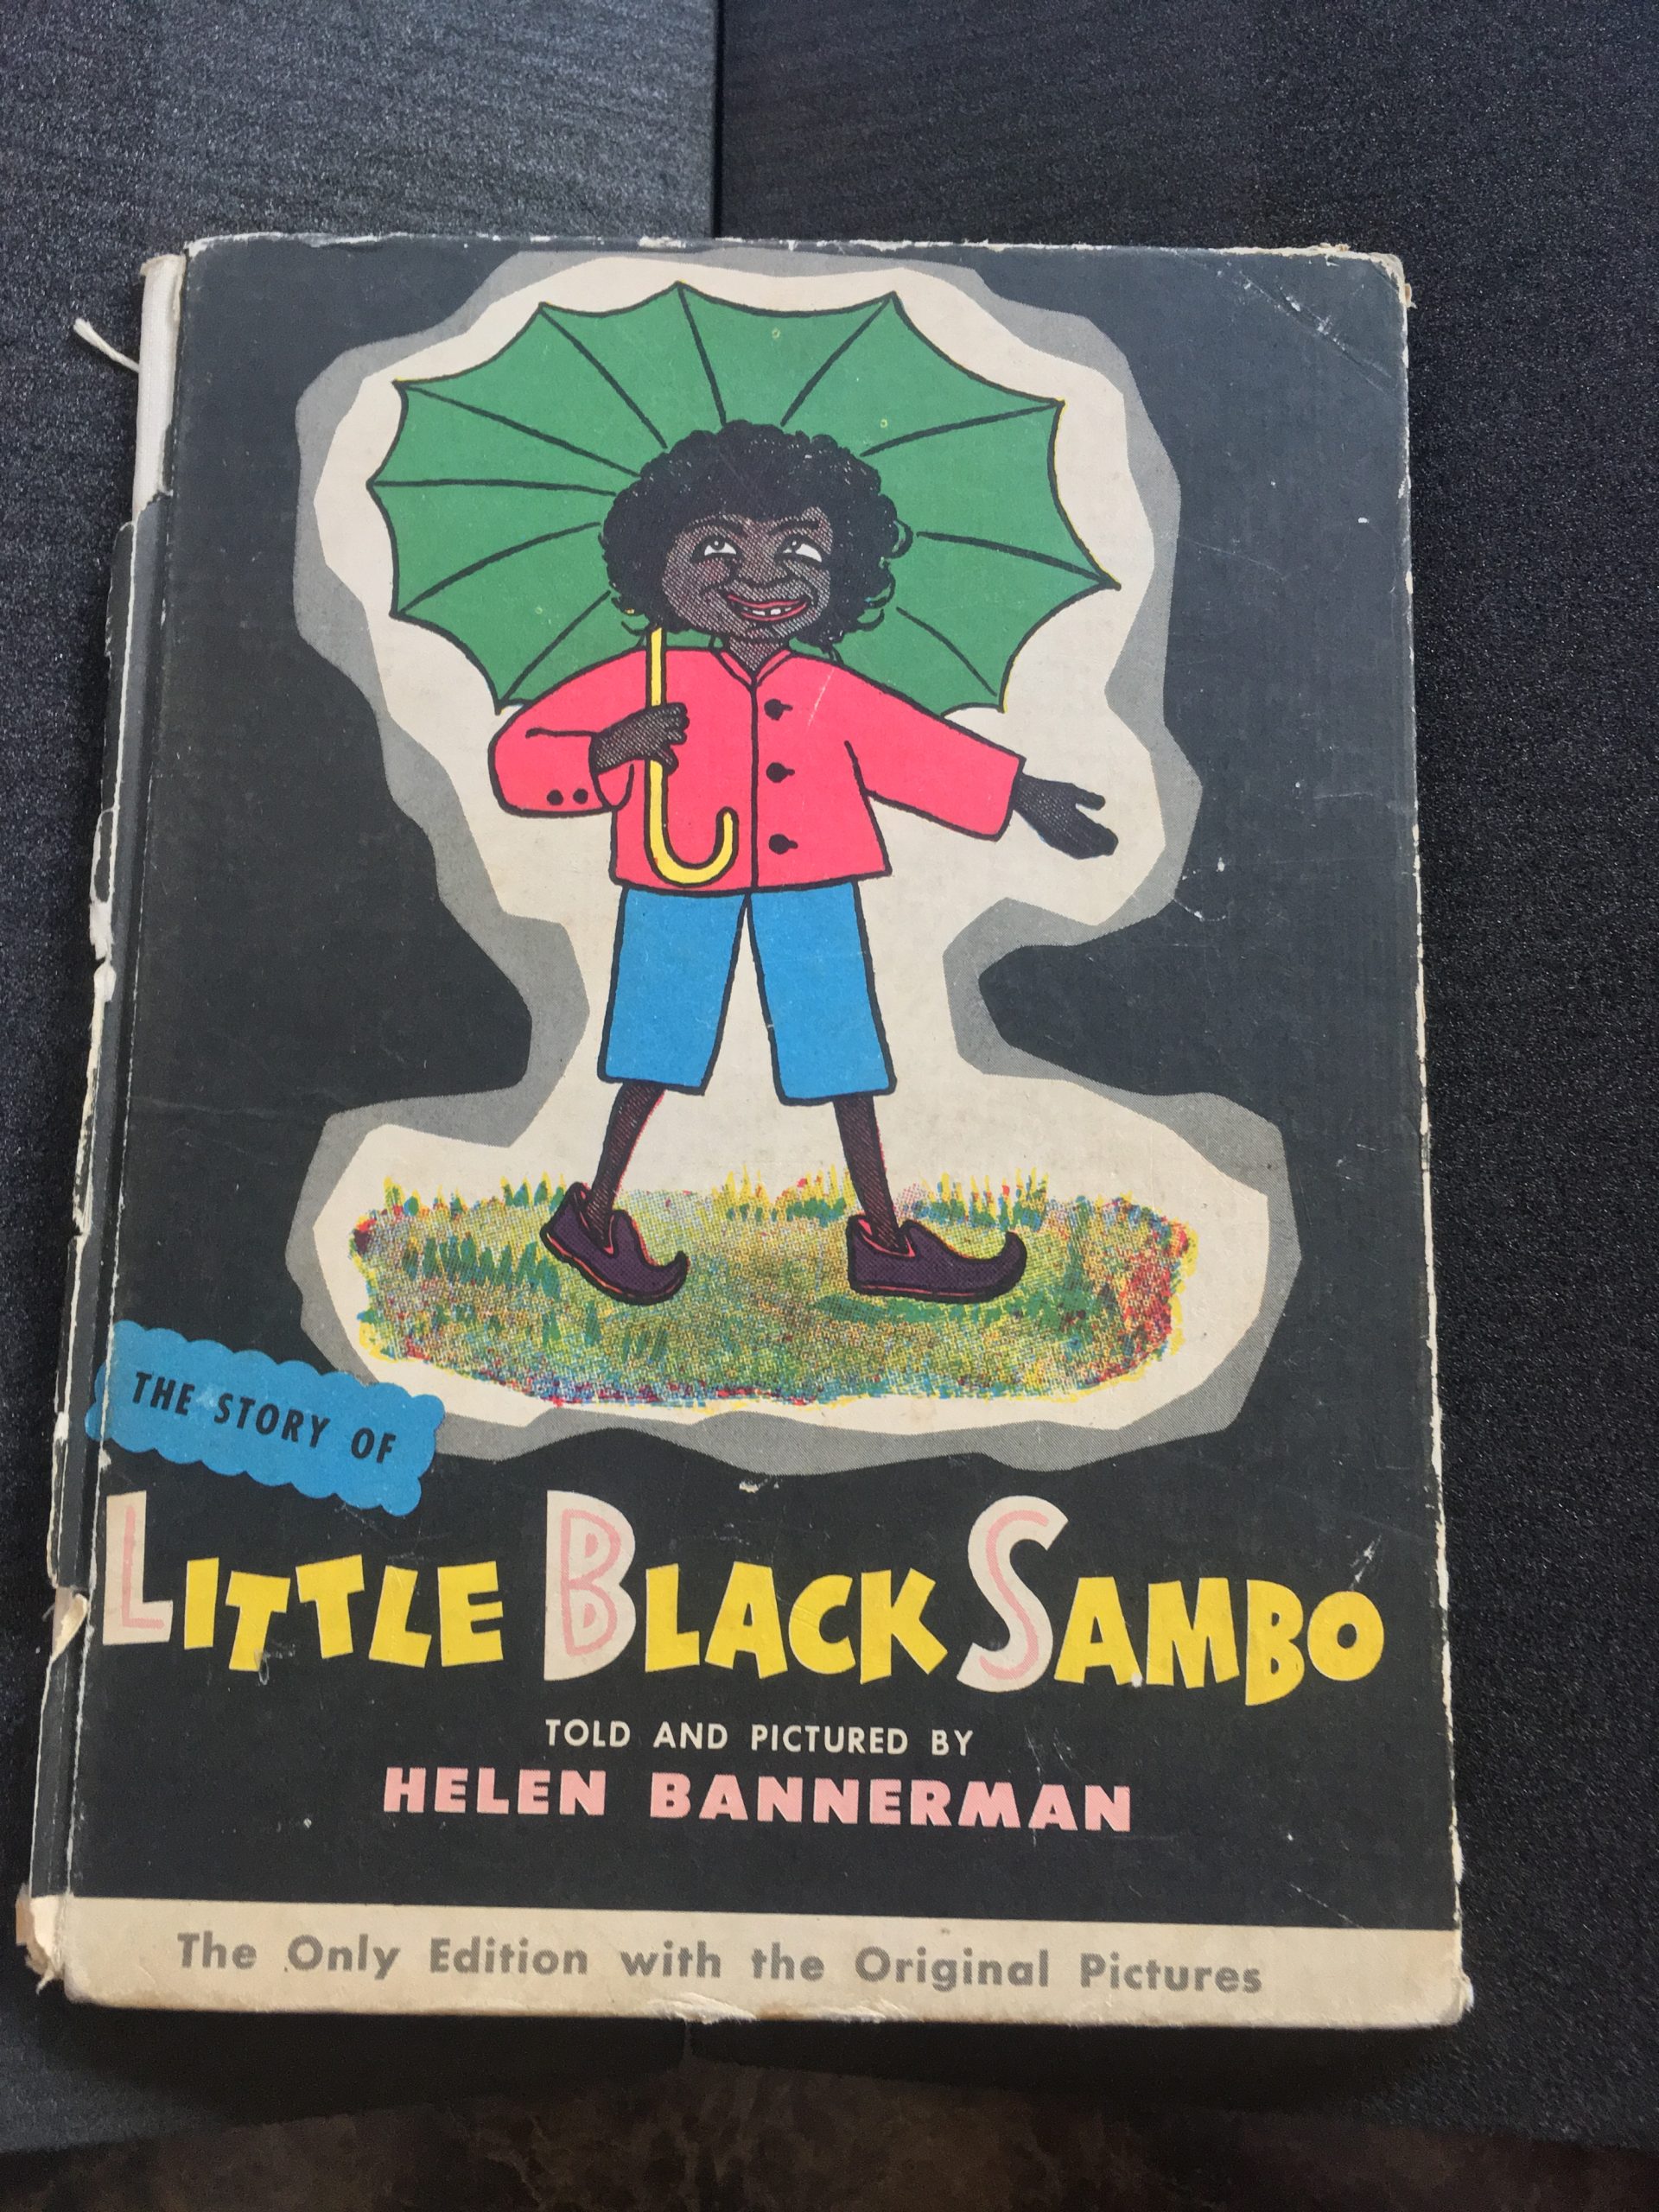 Cover of "Little Black Sambo"